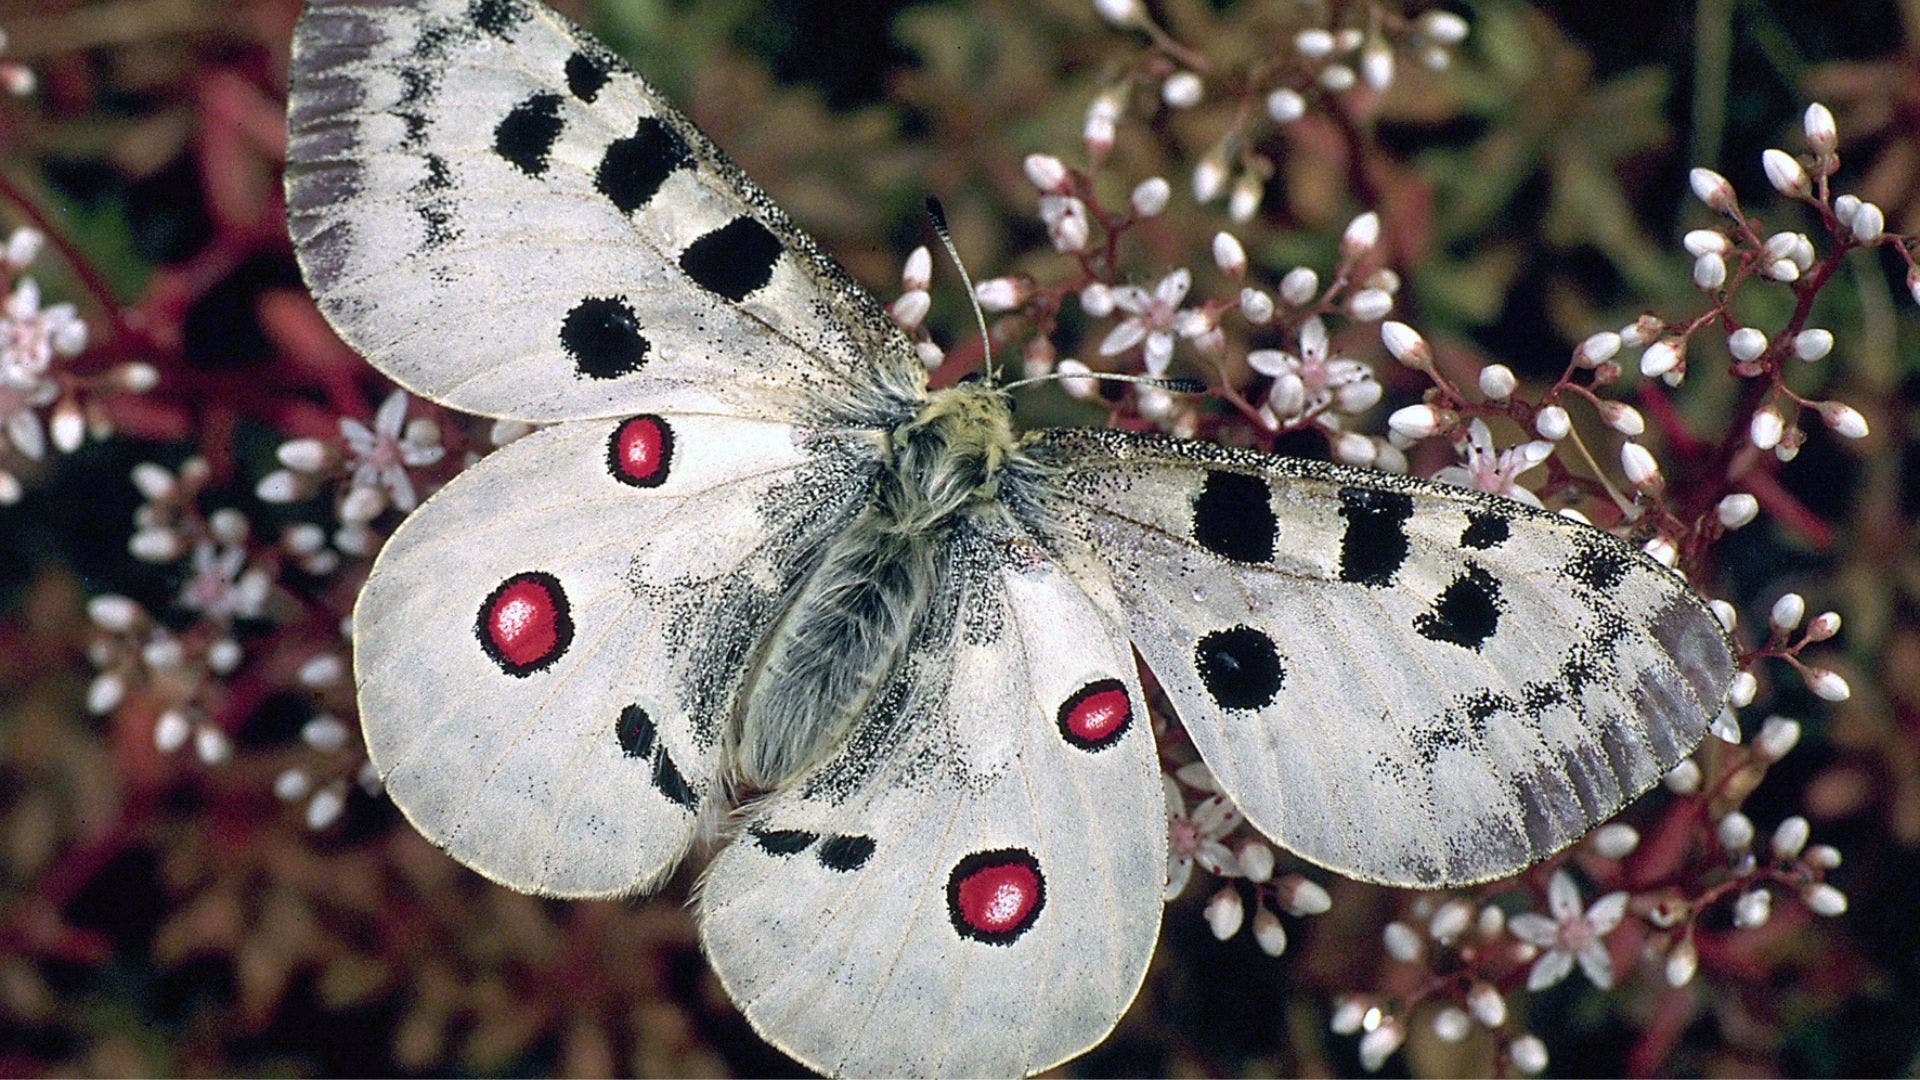 Ein Mosel-Apollofalter sitzt auf den hellrosa gefärbten Blüten eines Mauerpfeffers. Der Falter ist weiß mit schwarzen Flecken und roten Augenflecken. Die Flügel sind offen und der Falter ist von oben zu sehen. Der Hintergrund ist braun.